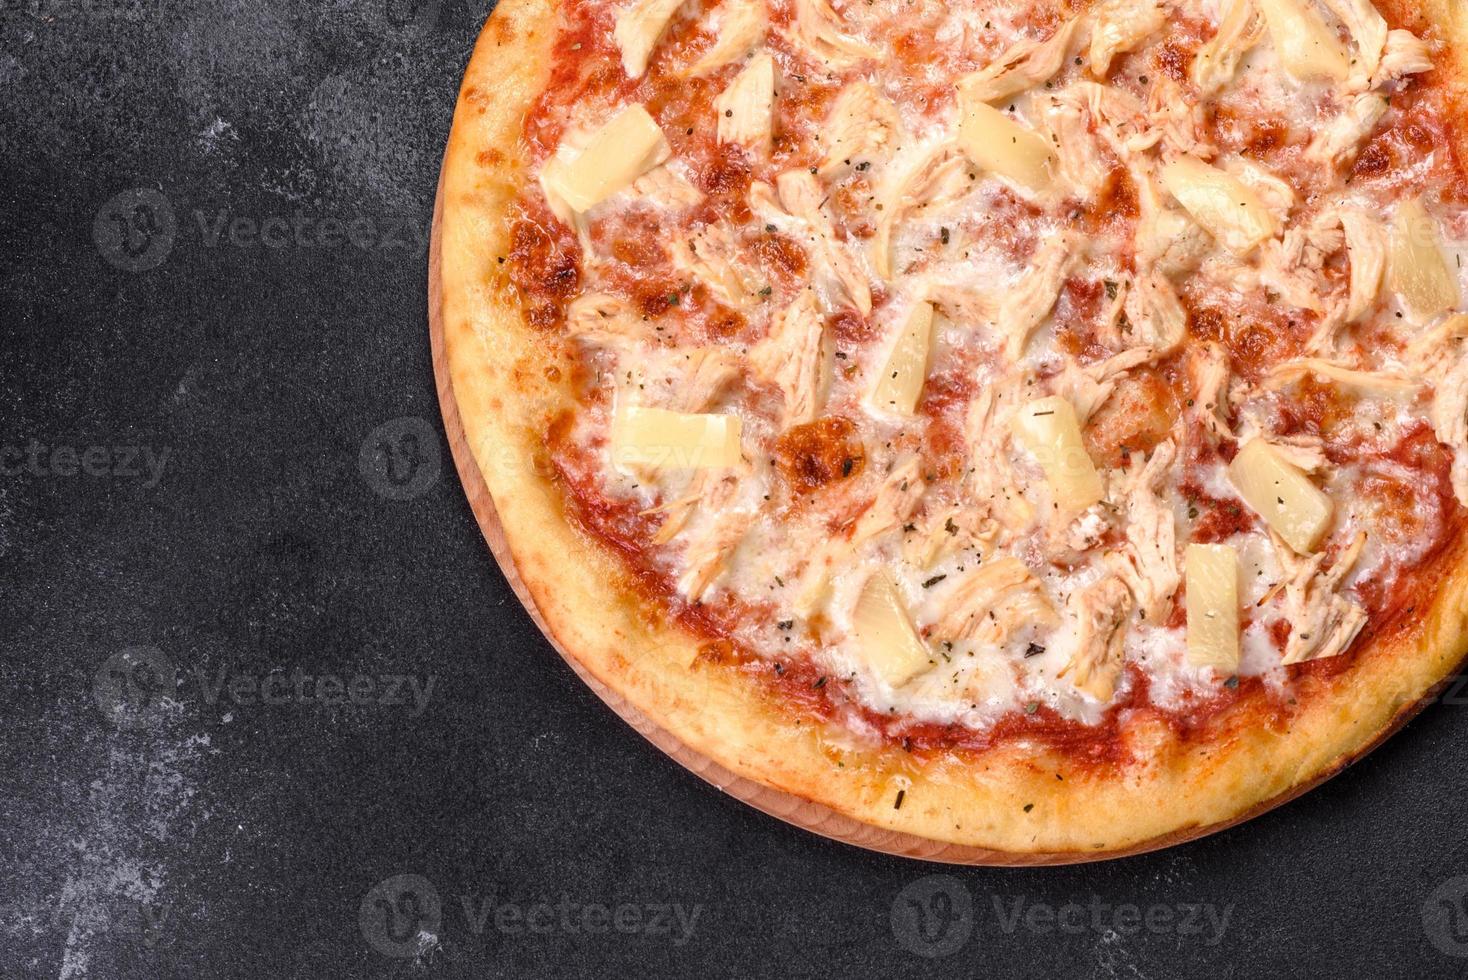 savoureuse pizza au four frais avec tomates, fromage et ananas sur fond de béton foncé photo